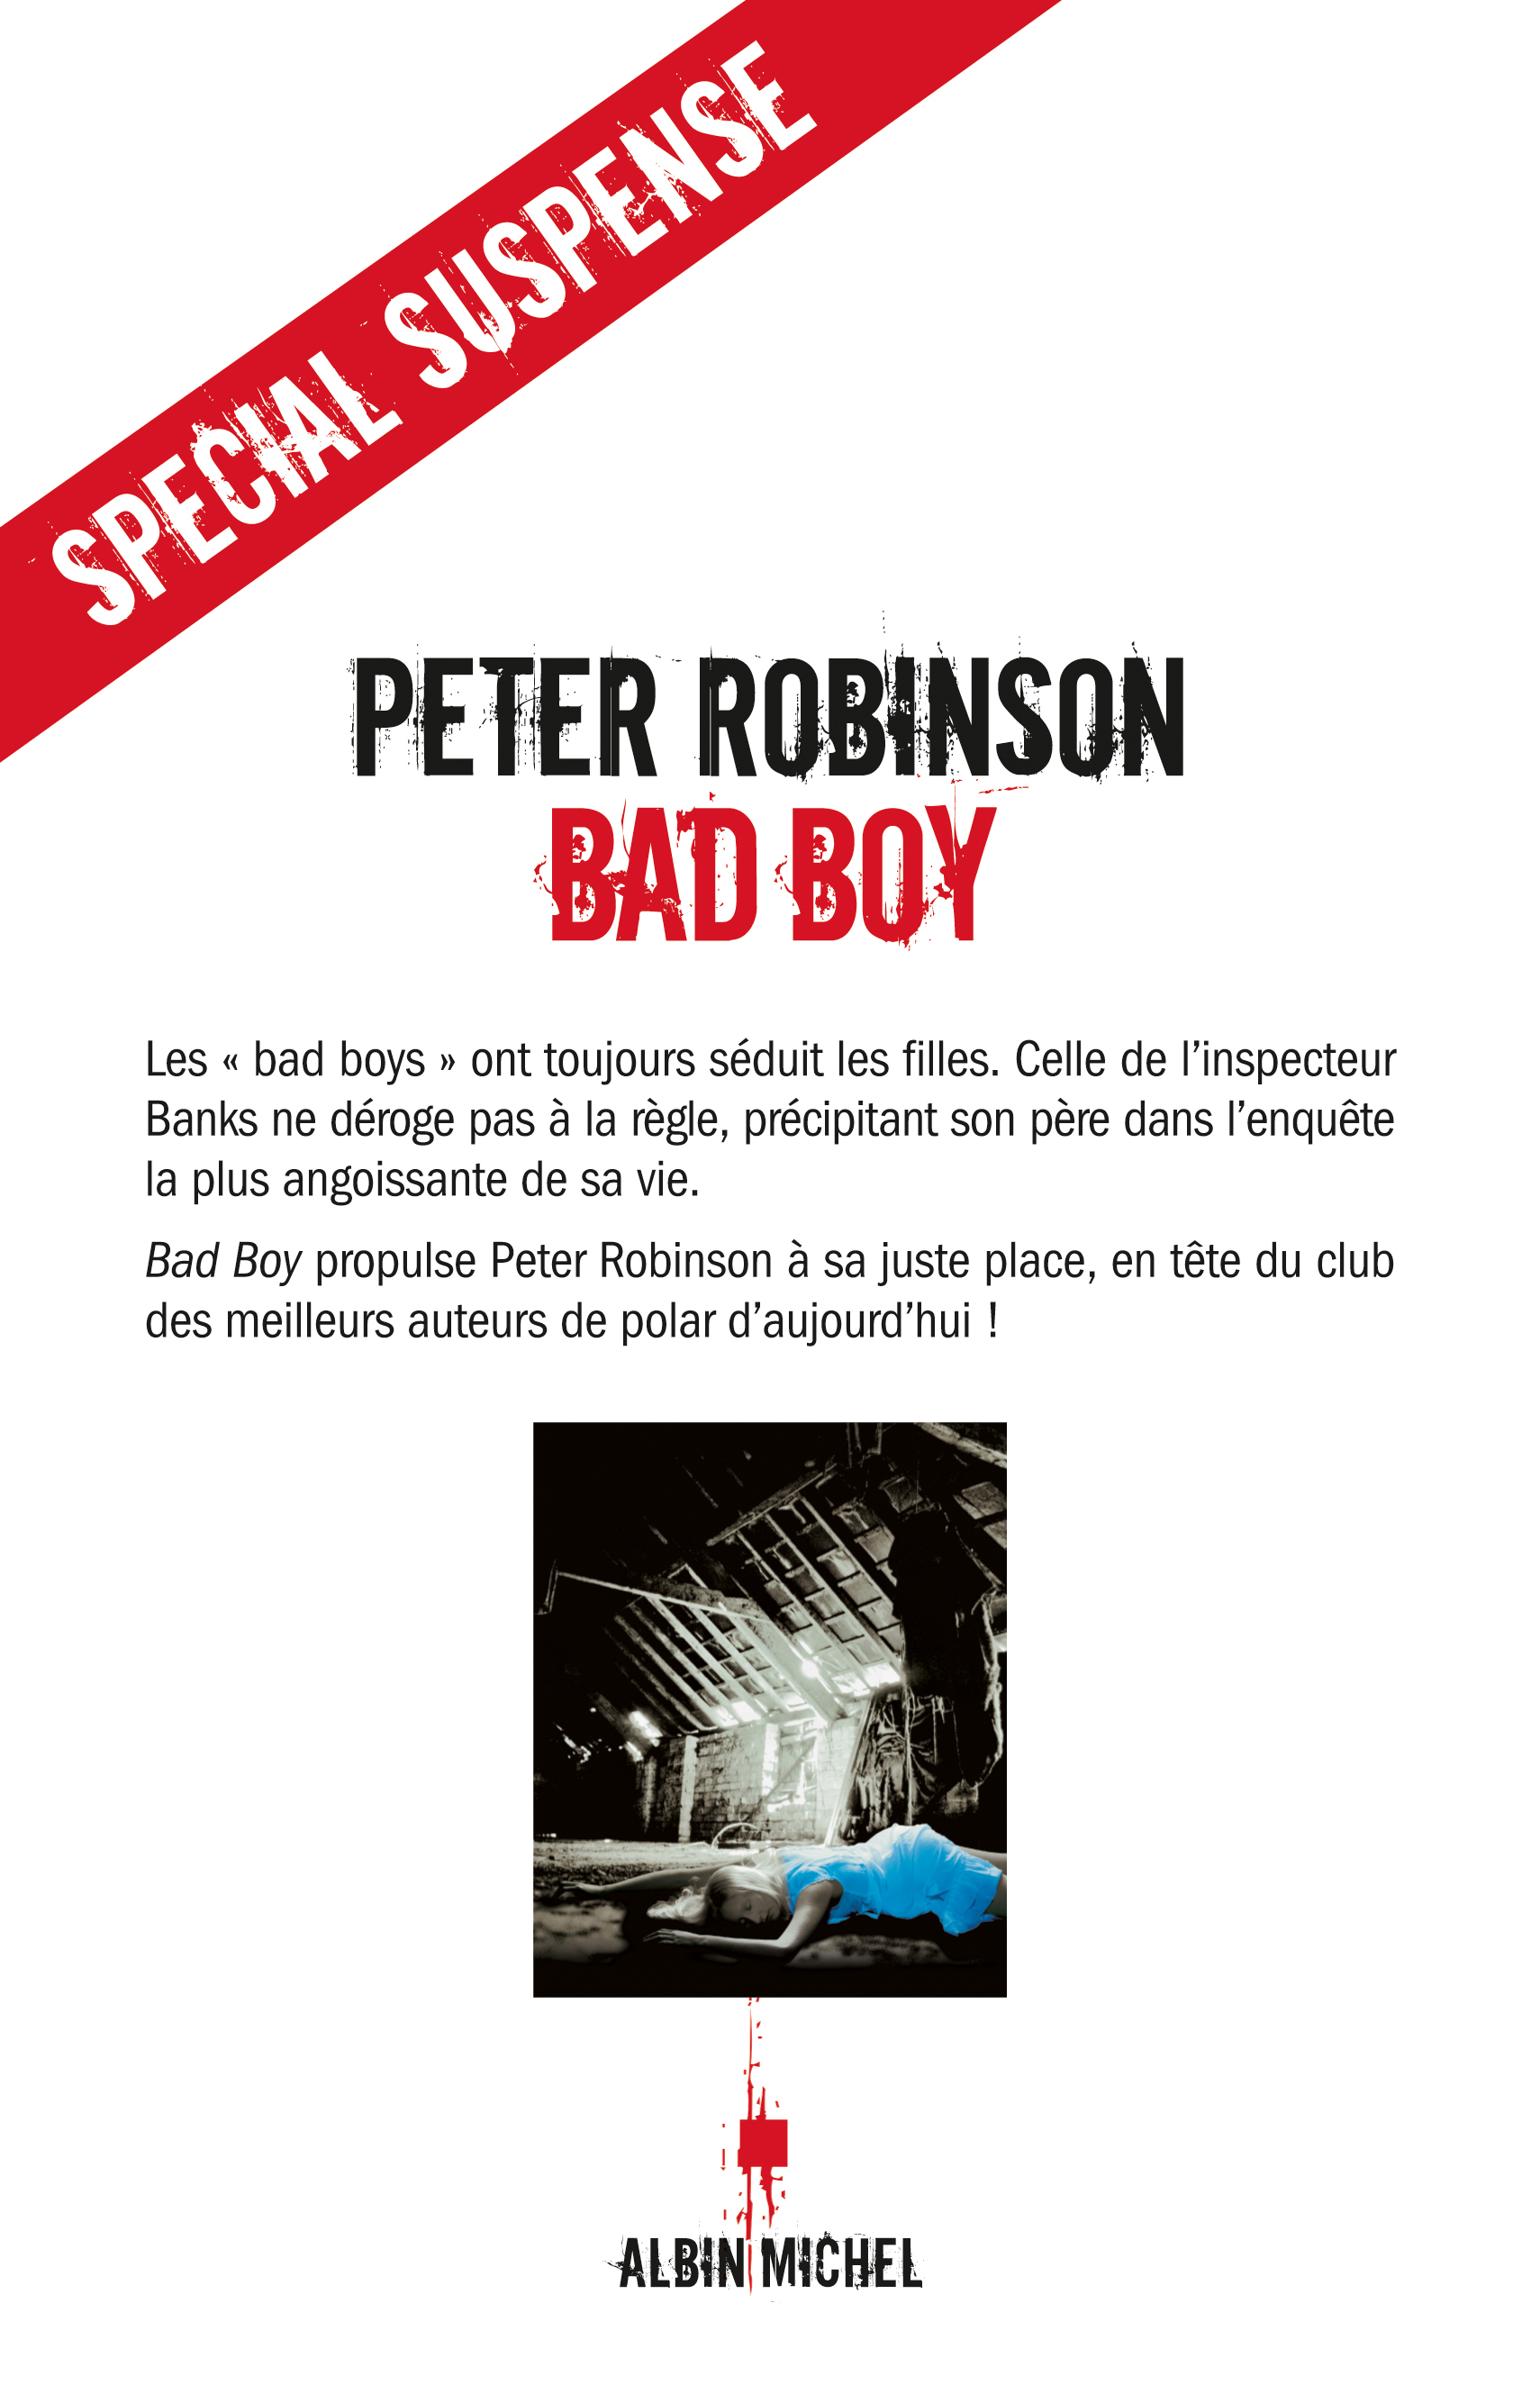 Couverture du livre Bad boy